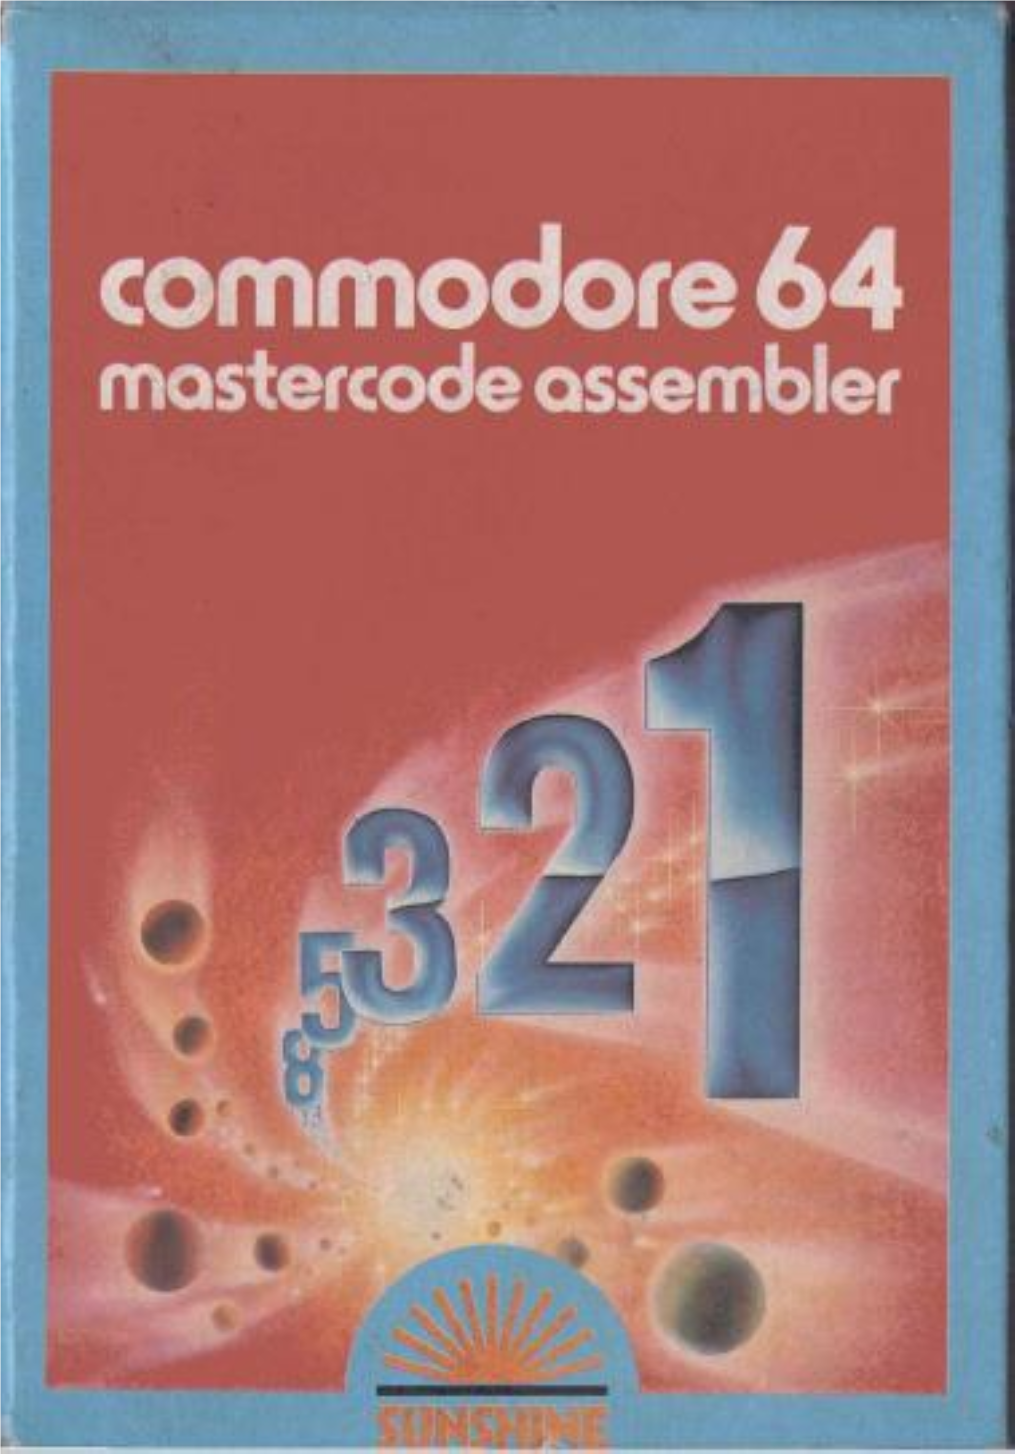 Mastercode Assembler